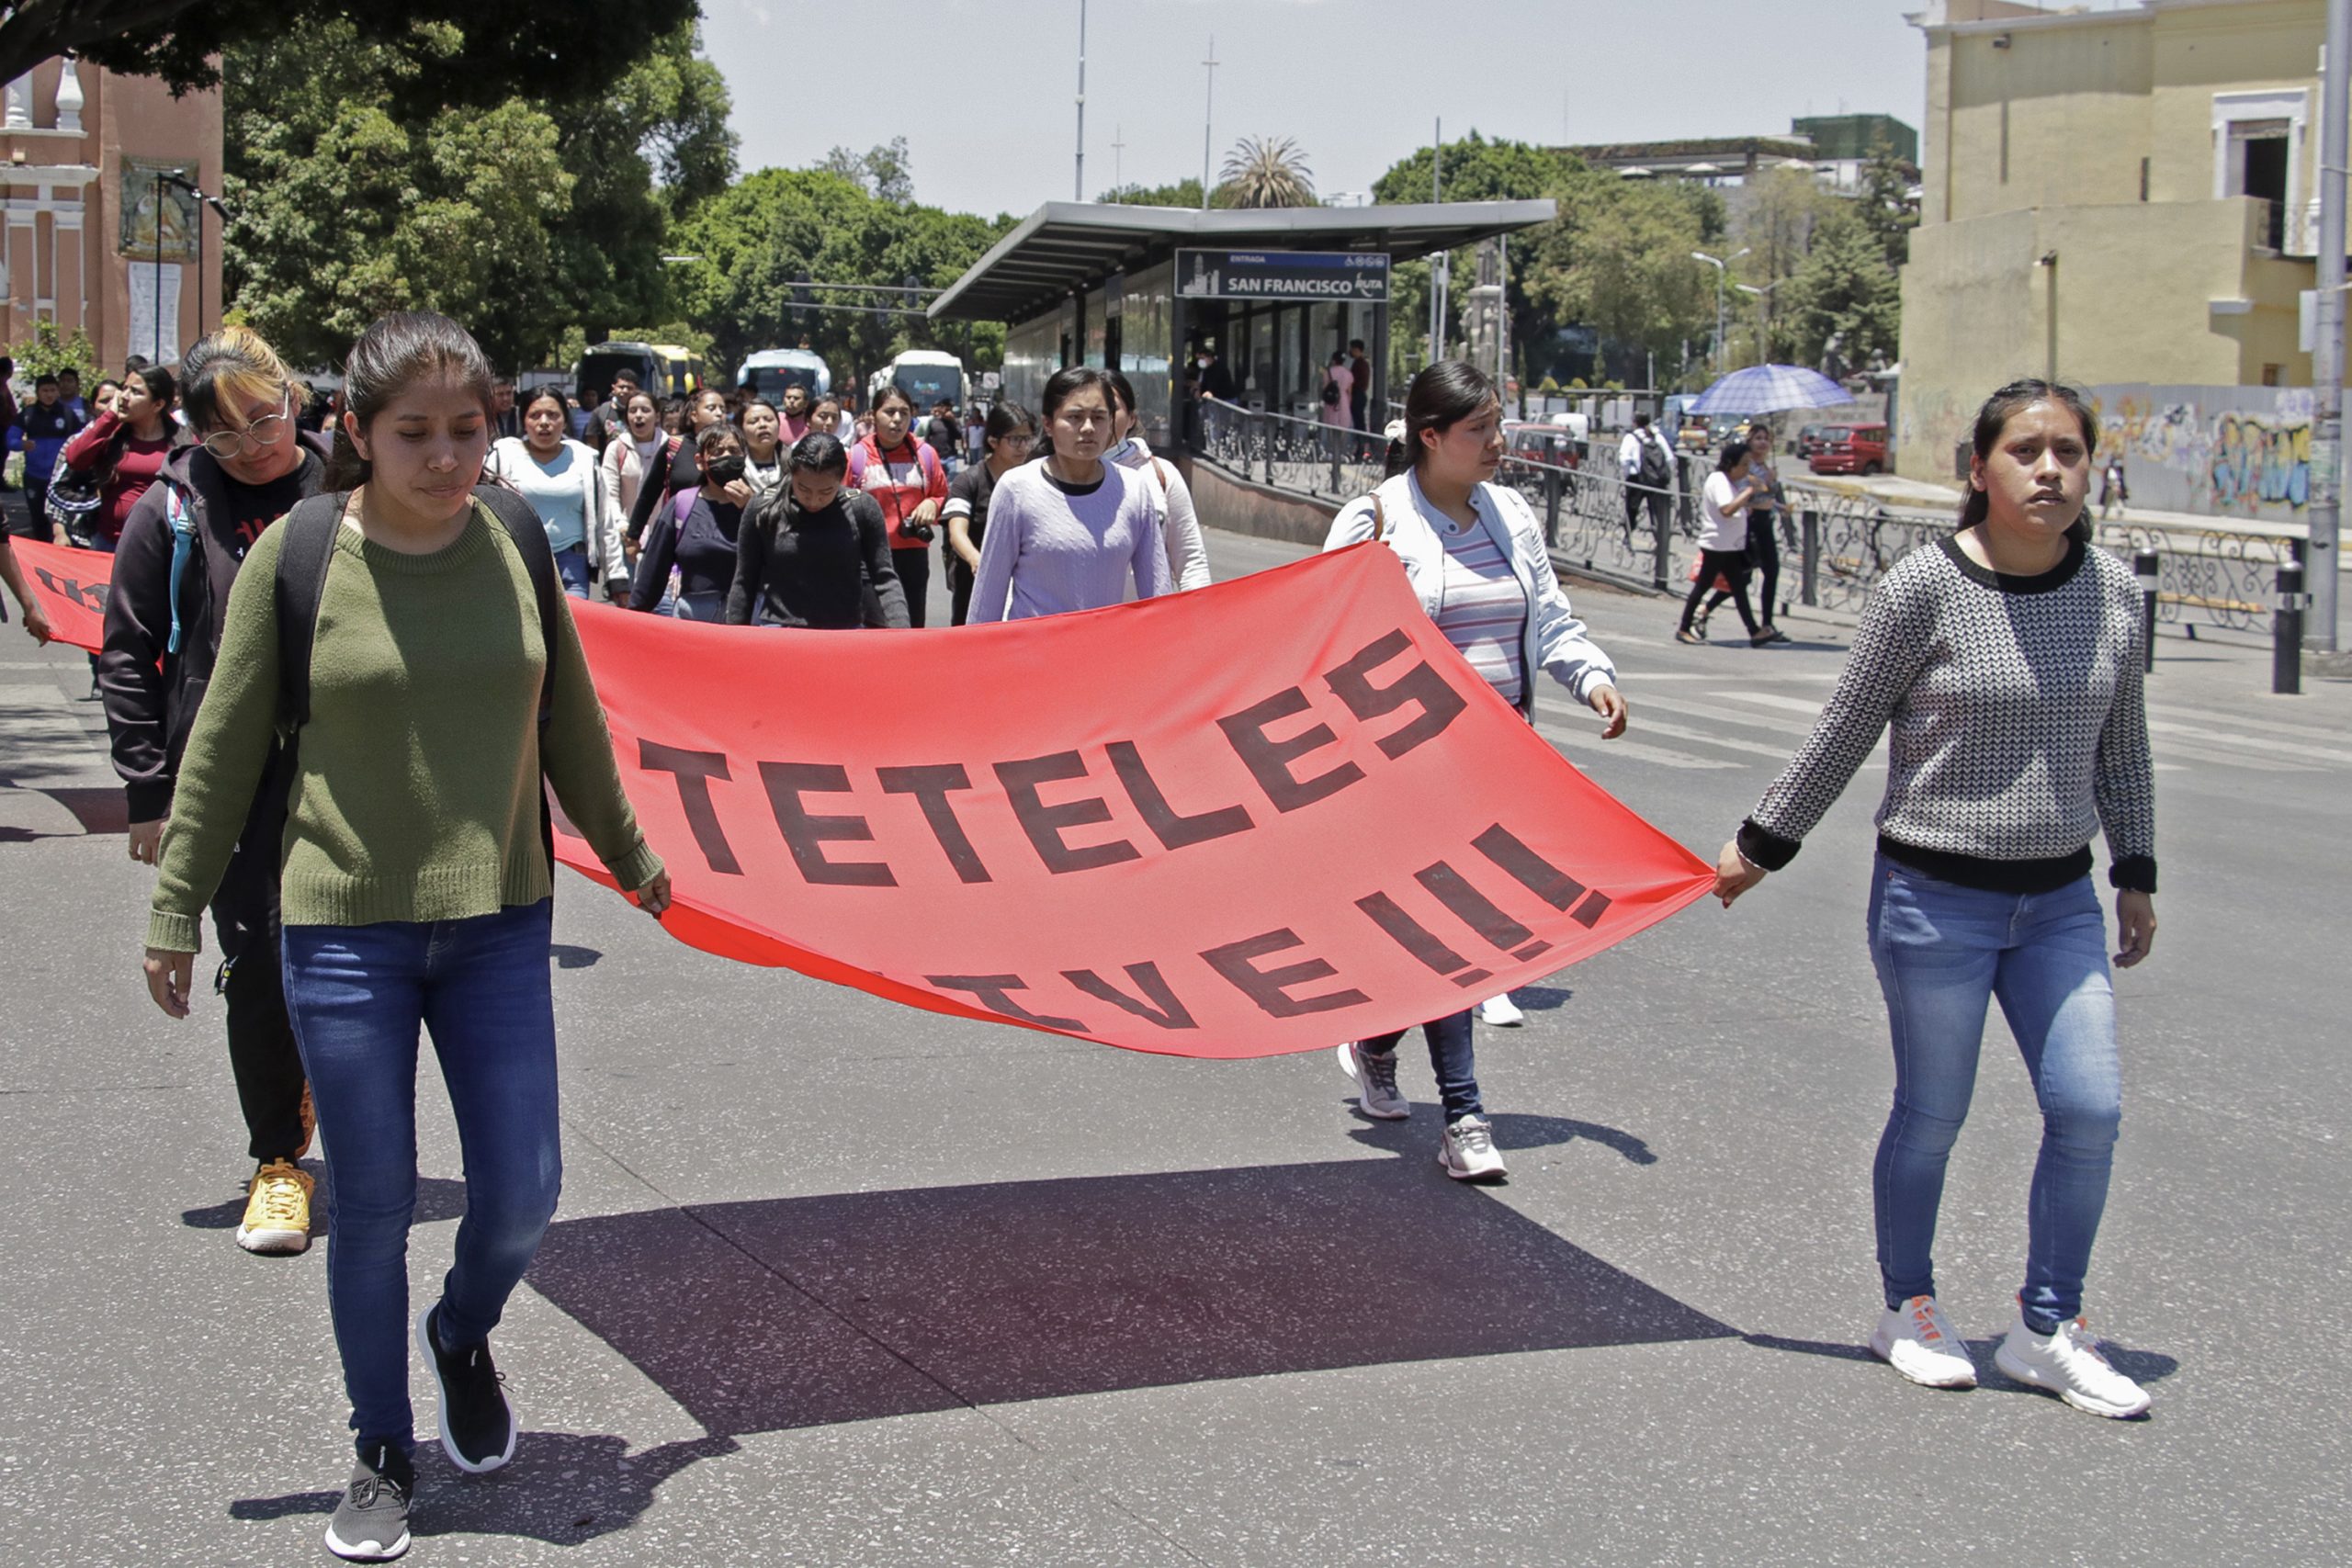 Gobernador abre diálogo con normalistas de Teteles, atenderán demandas